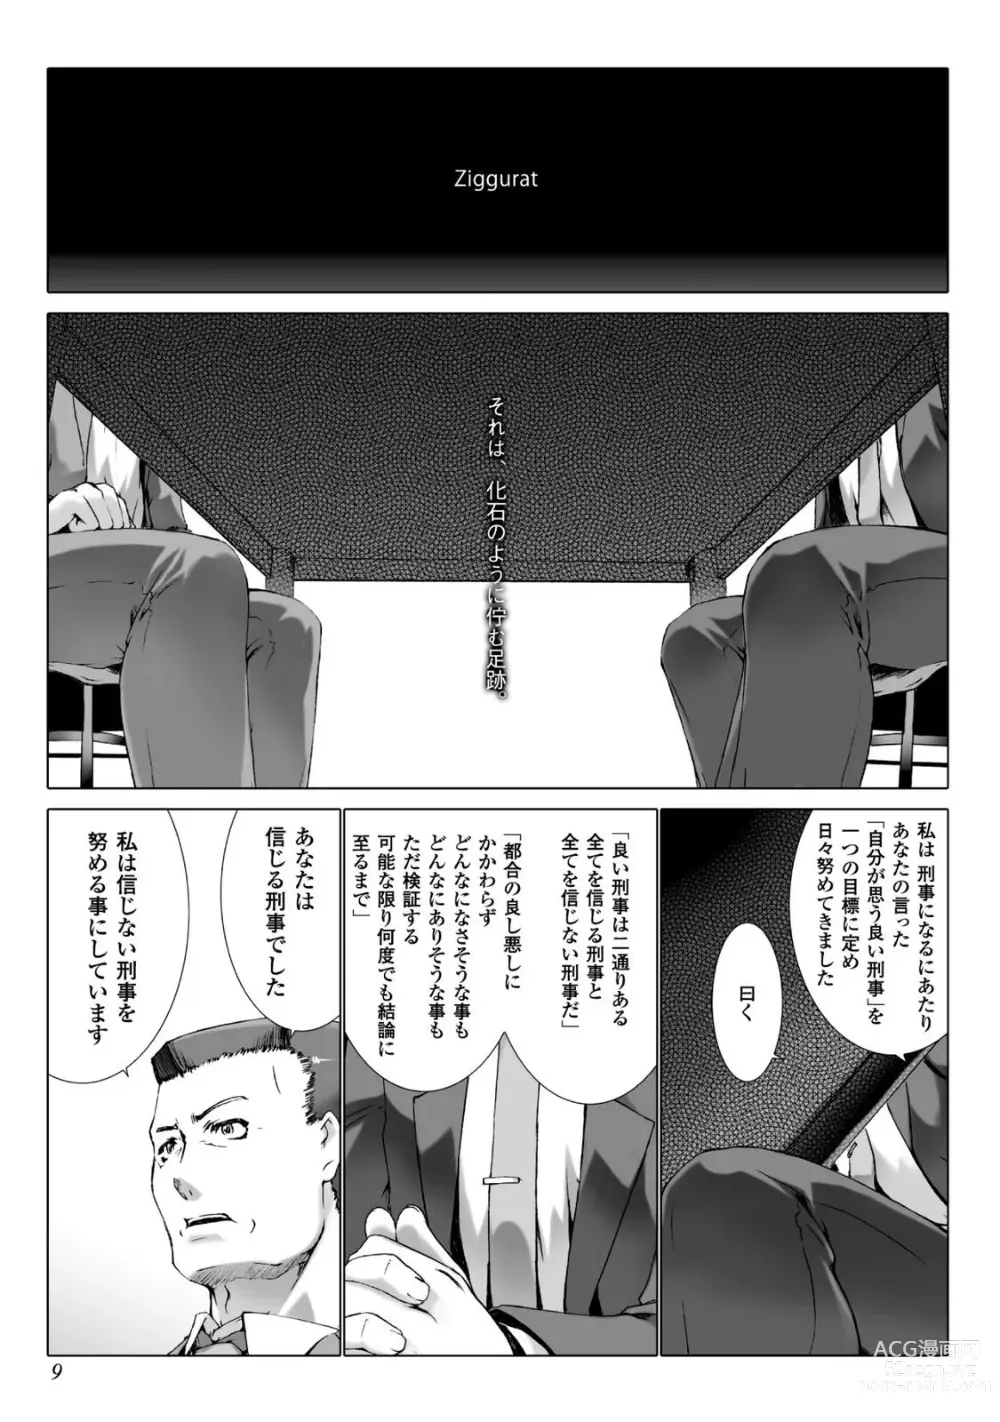 Page 10 of manga Ziggurat 5